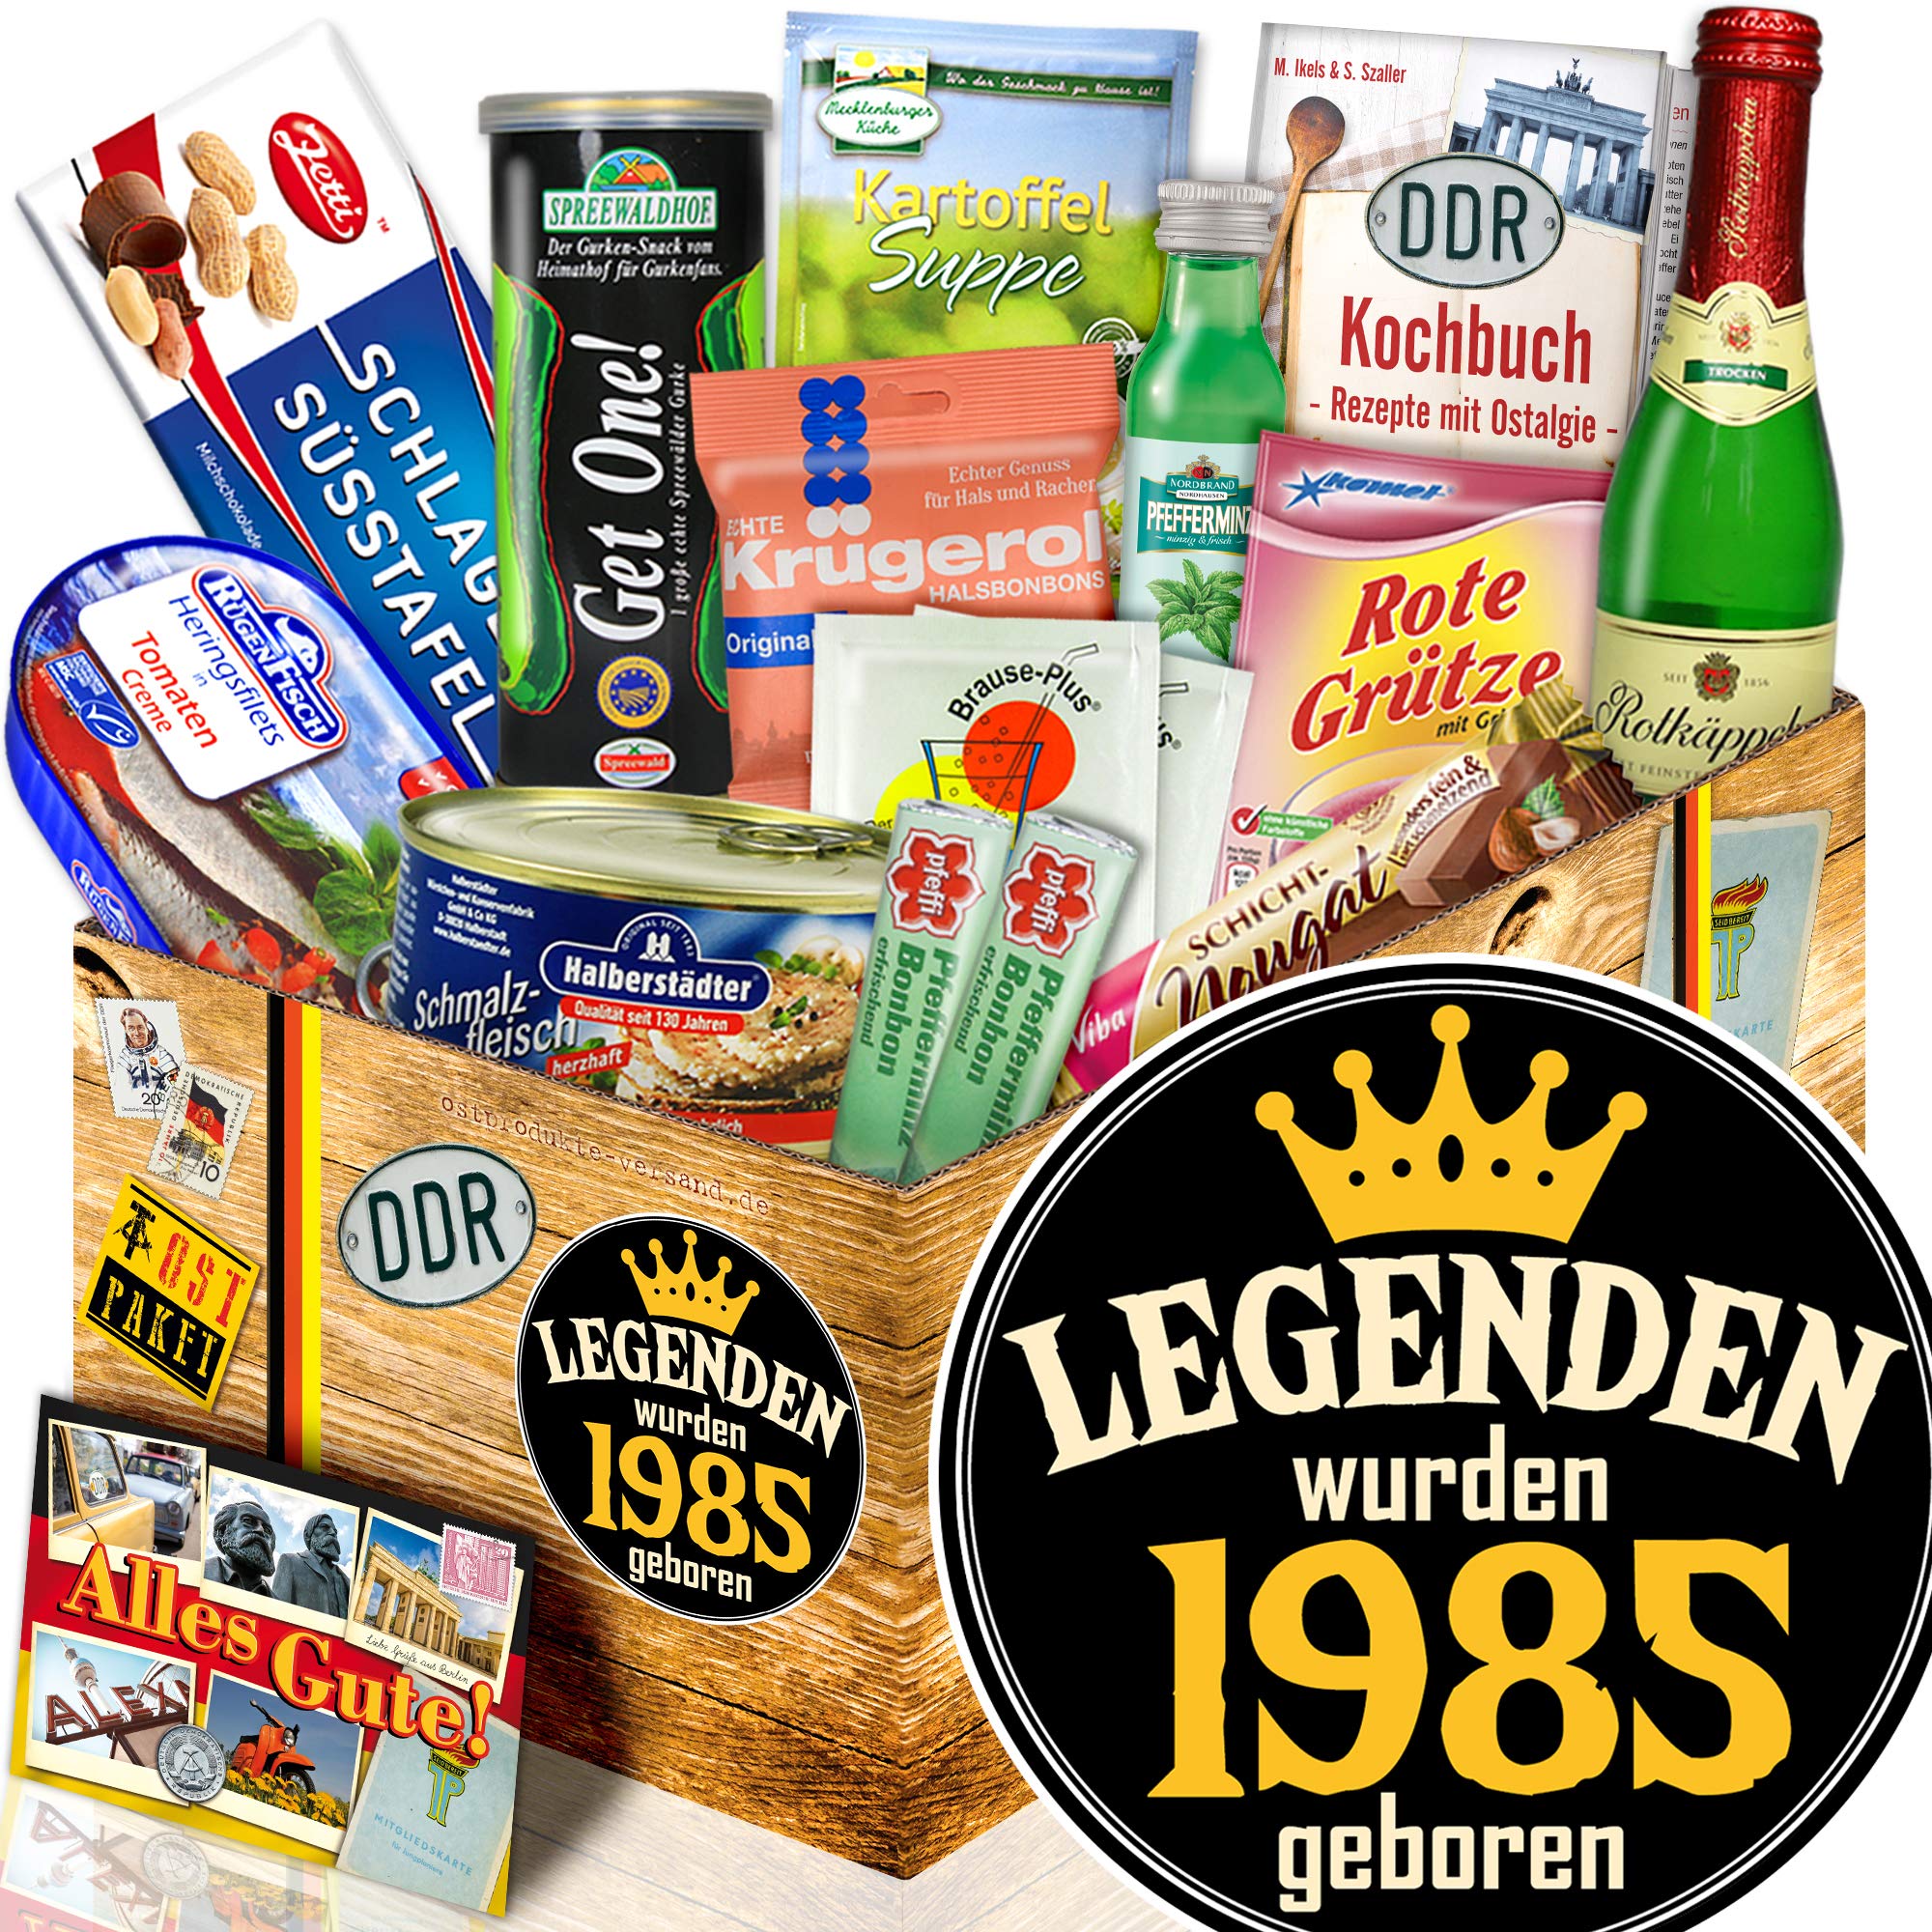 ostprodukte-versand Legenden 1985 / Geschenkidee 1985 / Spezialitäten Box DDR